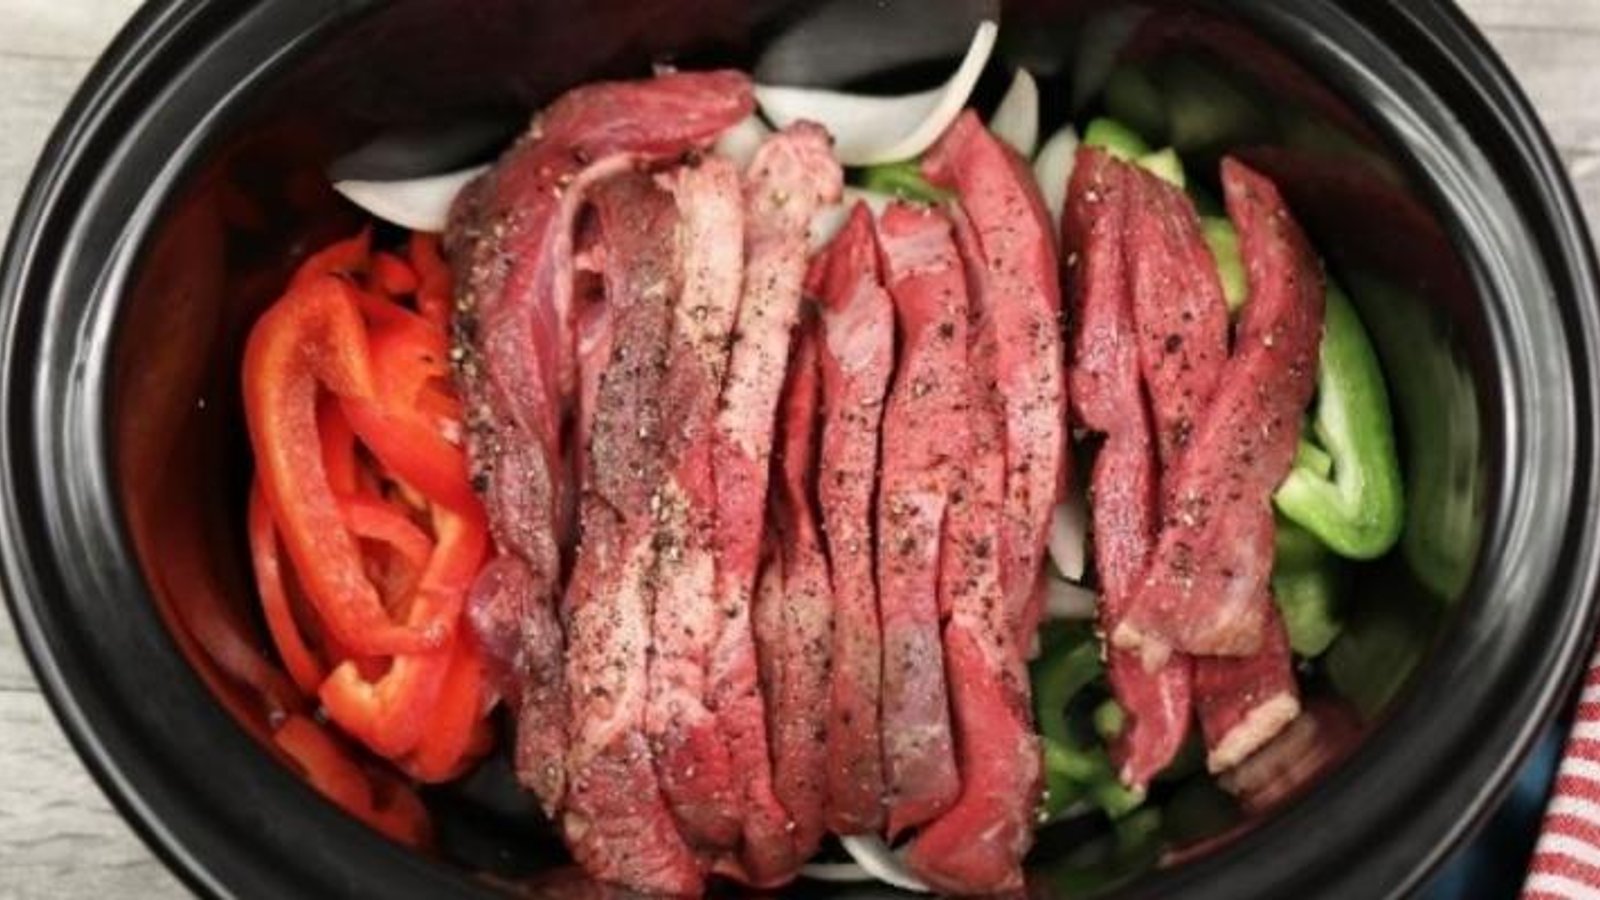 Elle met des oignons, des poivrons et des lanières de boeuf dans sa mijoteuse afin de créer le meilleur pepper steak 